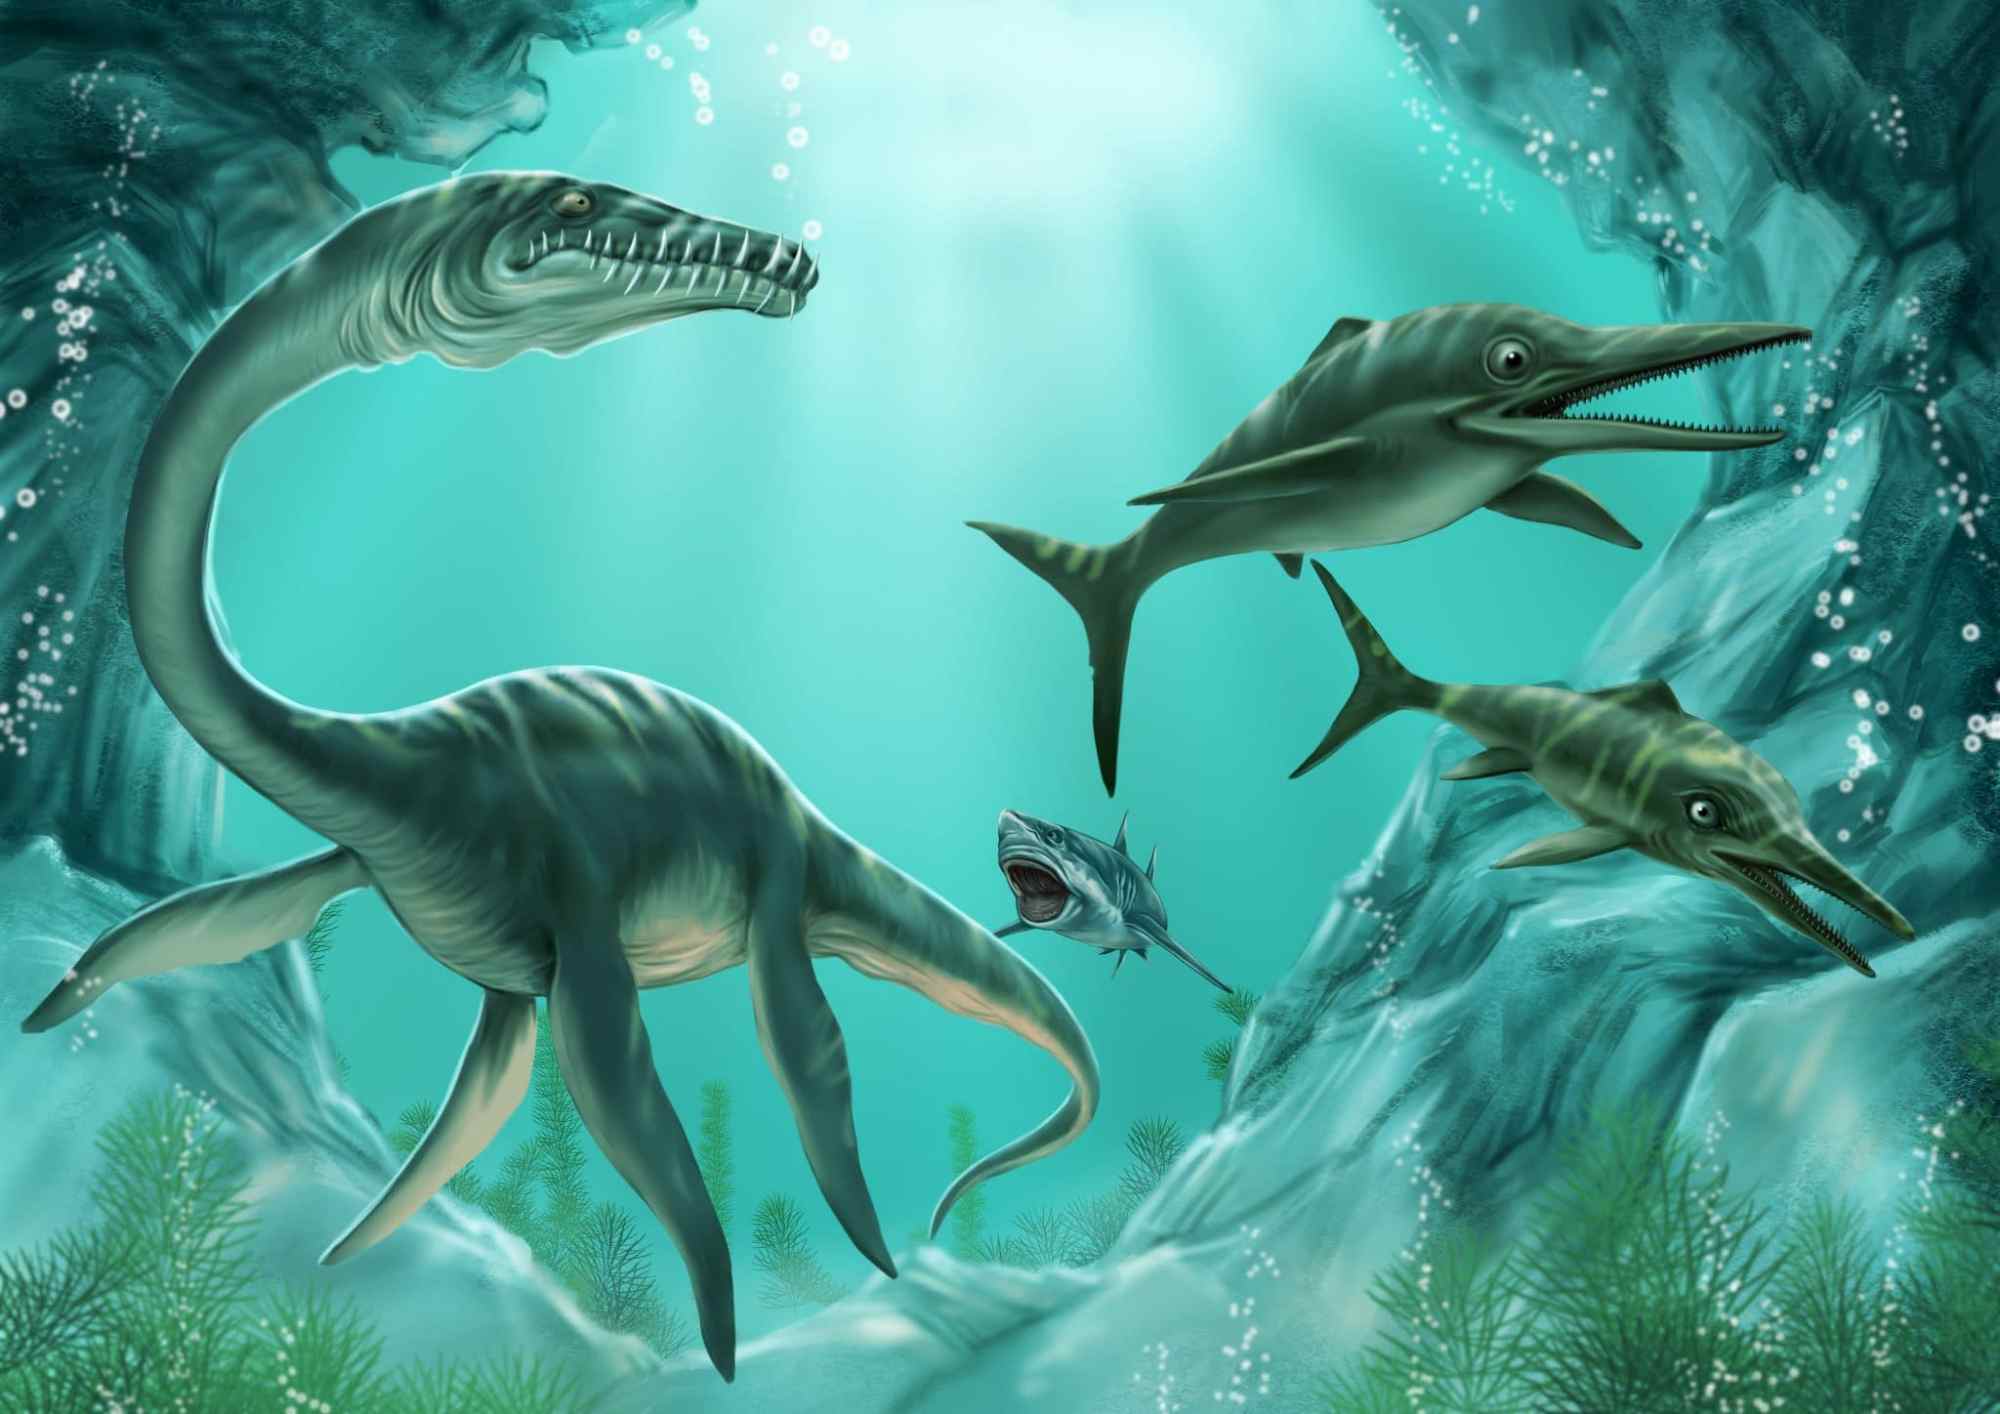 英国发现有史以来最大鱼龙化石保存完美约18亿年历史